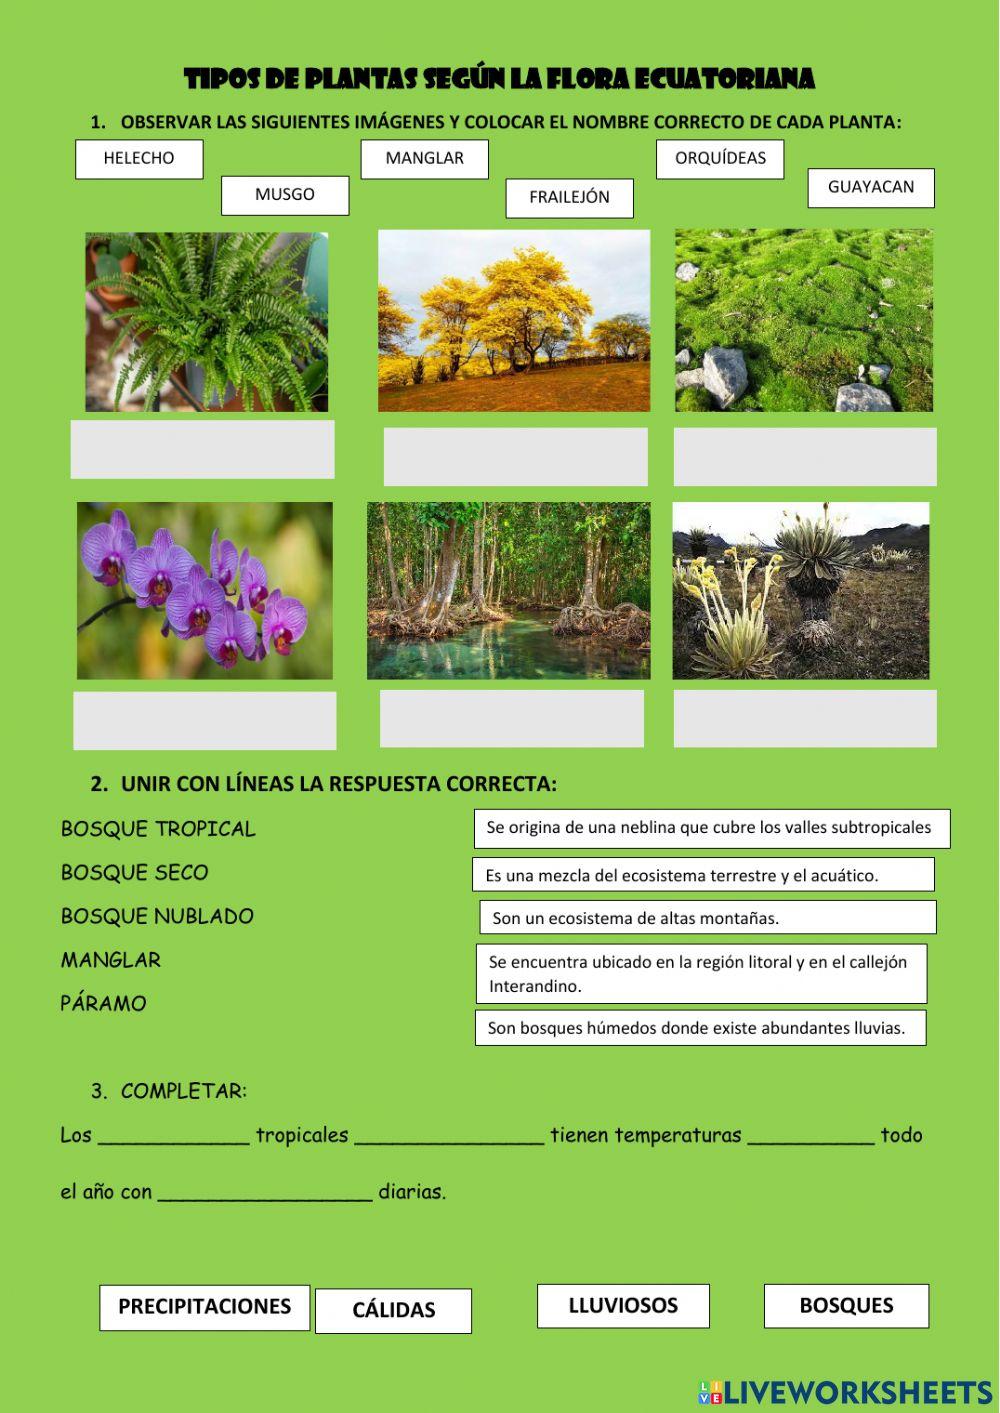 Tipos de plantas según la flora ecuatoriana